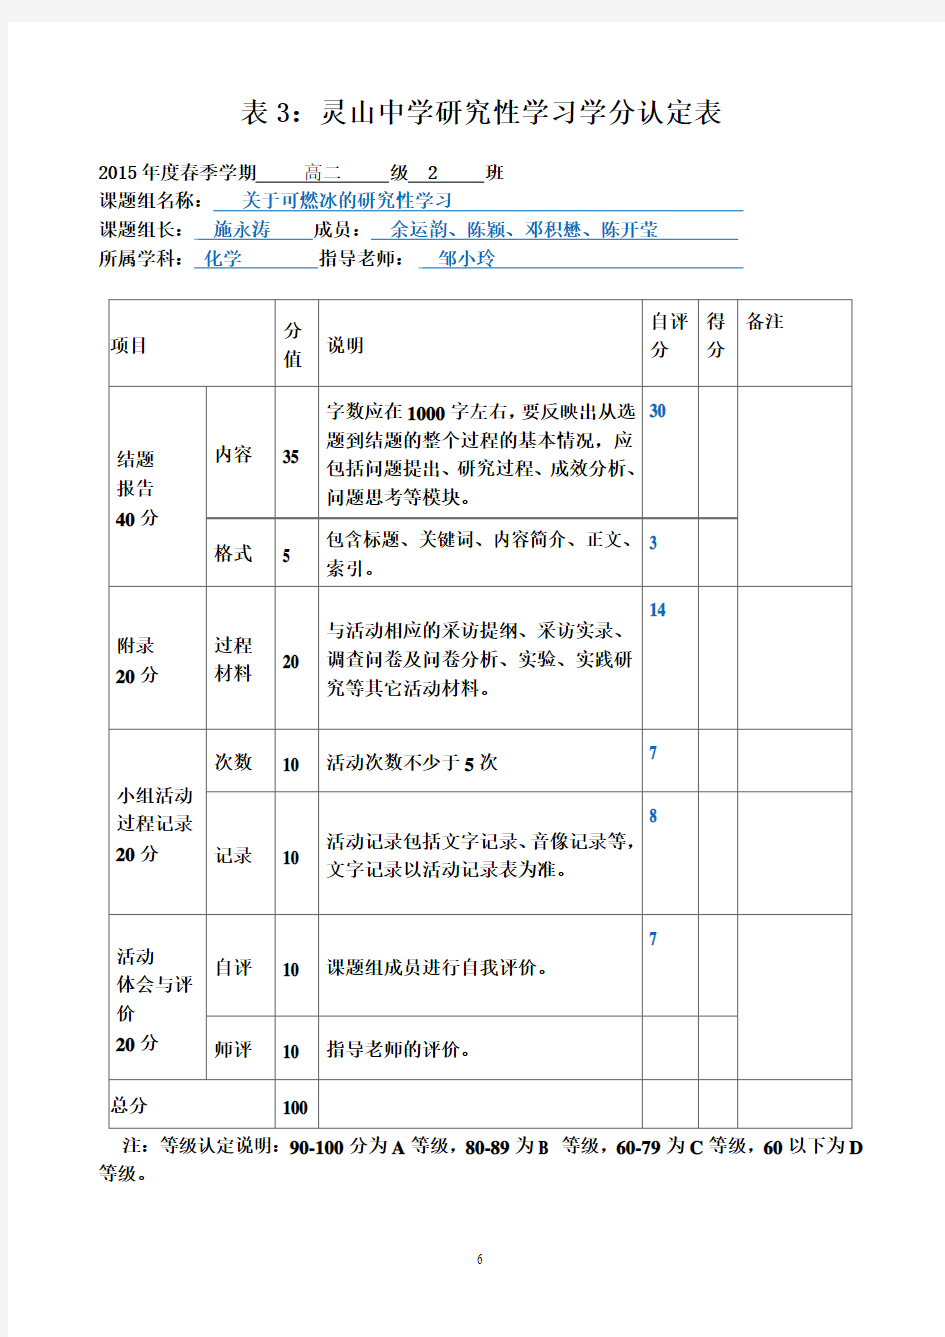 灵山中学研究性学习学生自评和教师评价表A4纸